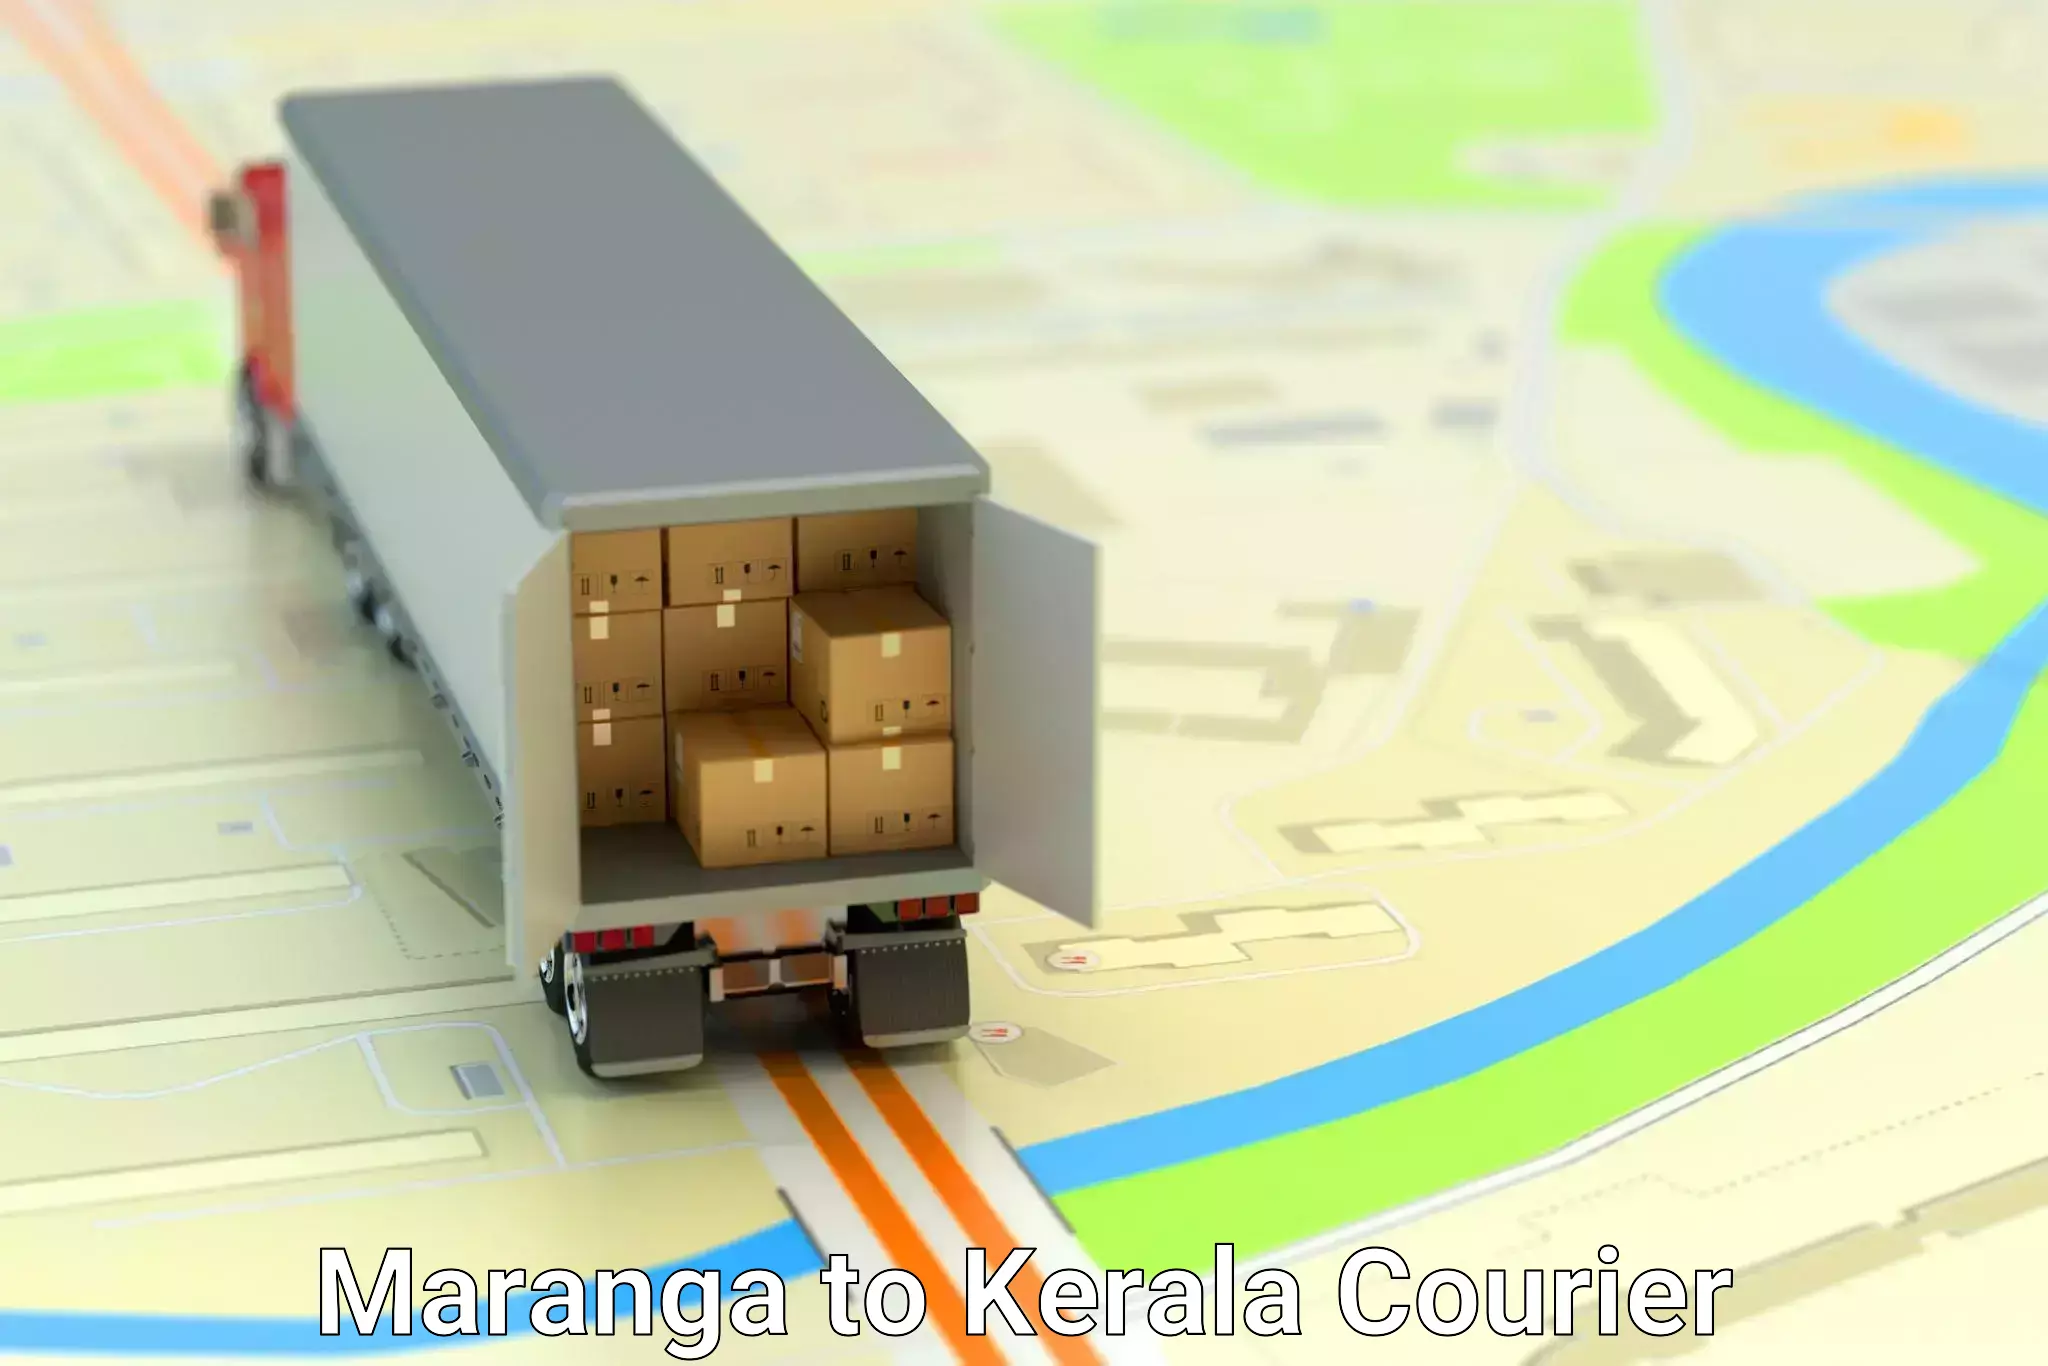 Home goods moving company Maranga to Kerala